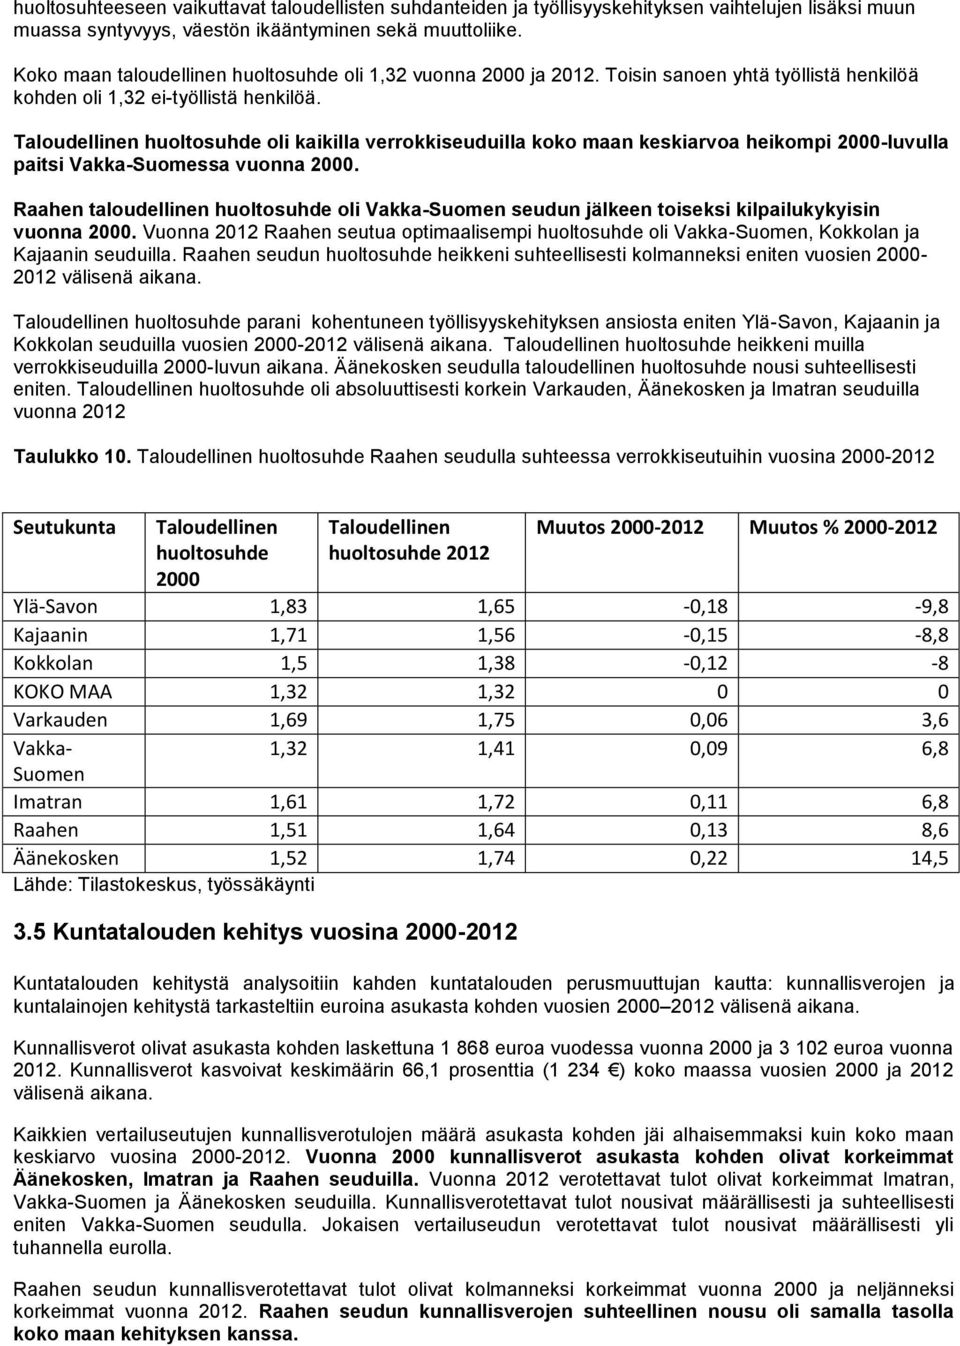 Taloudellinen huoltosuhde oli kaikilla verrokkiseuduilla koko maan keskiarvoa heikompi 2000-luvulla paitsi Vakka-Suomessa vuonna 2000.